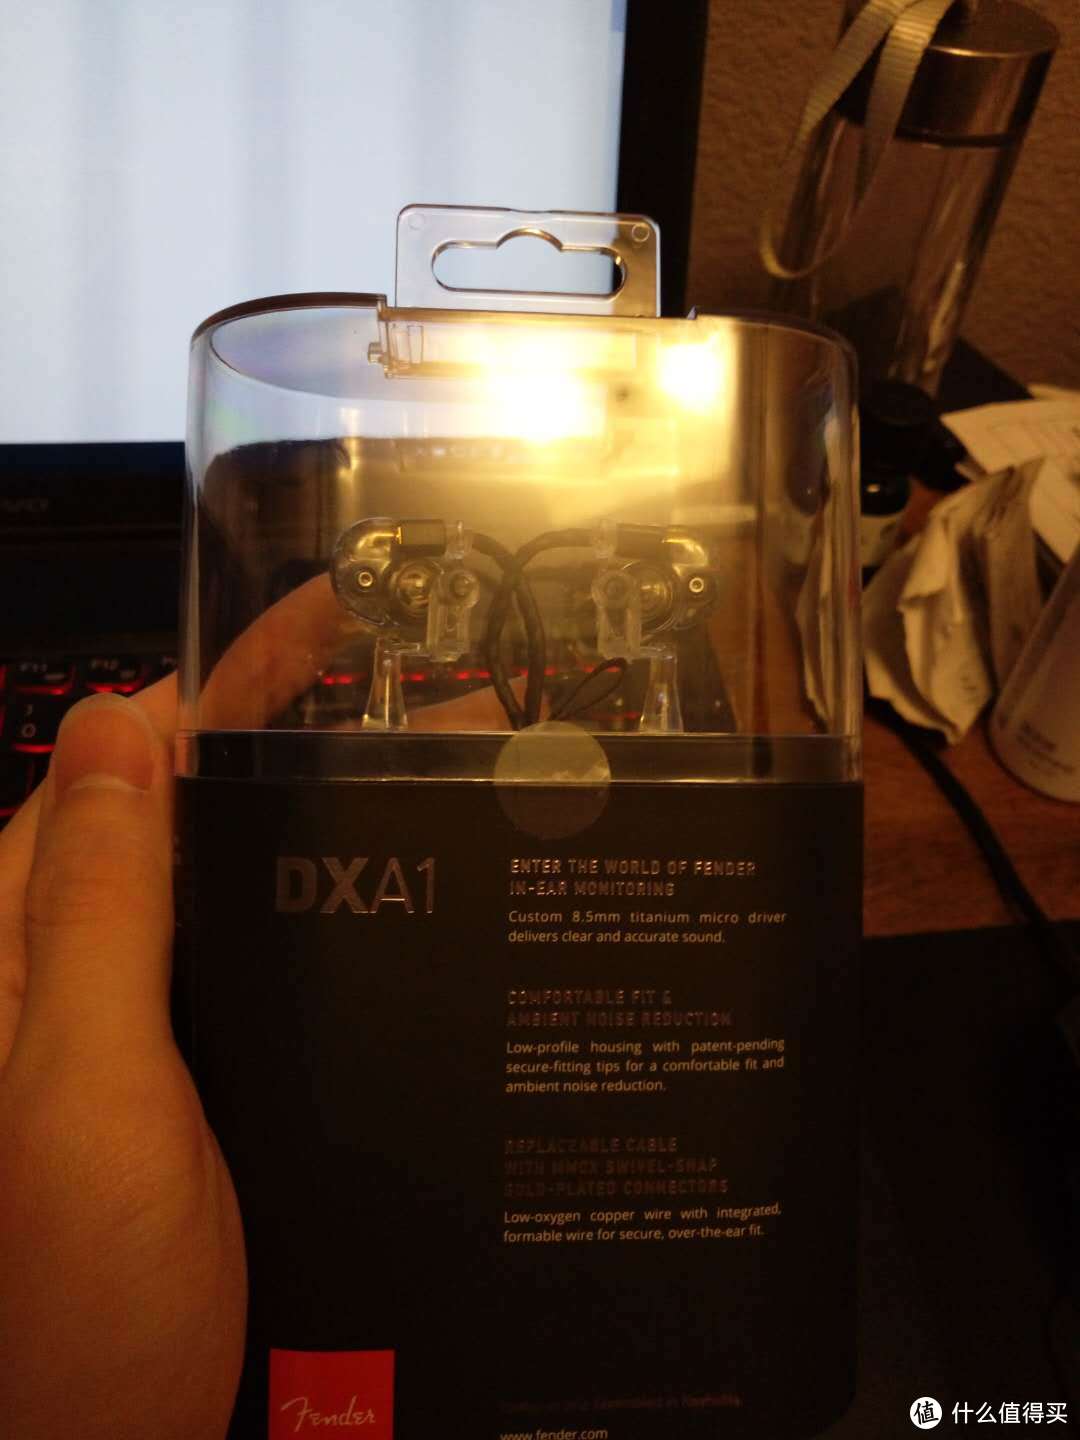 #淘金V计划#Fender DXA1 耳机 开箱及简单试用测评